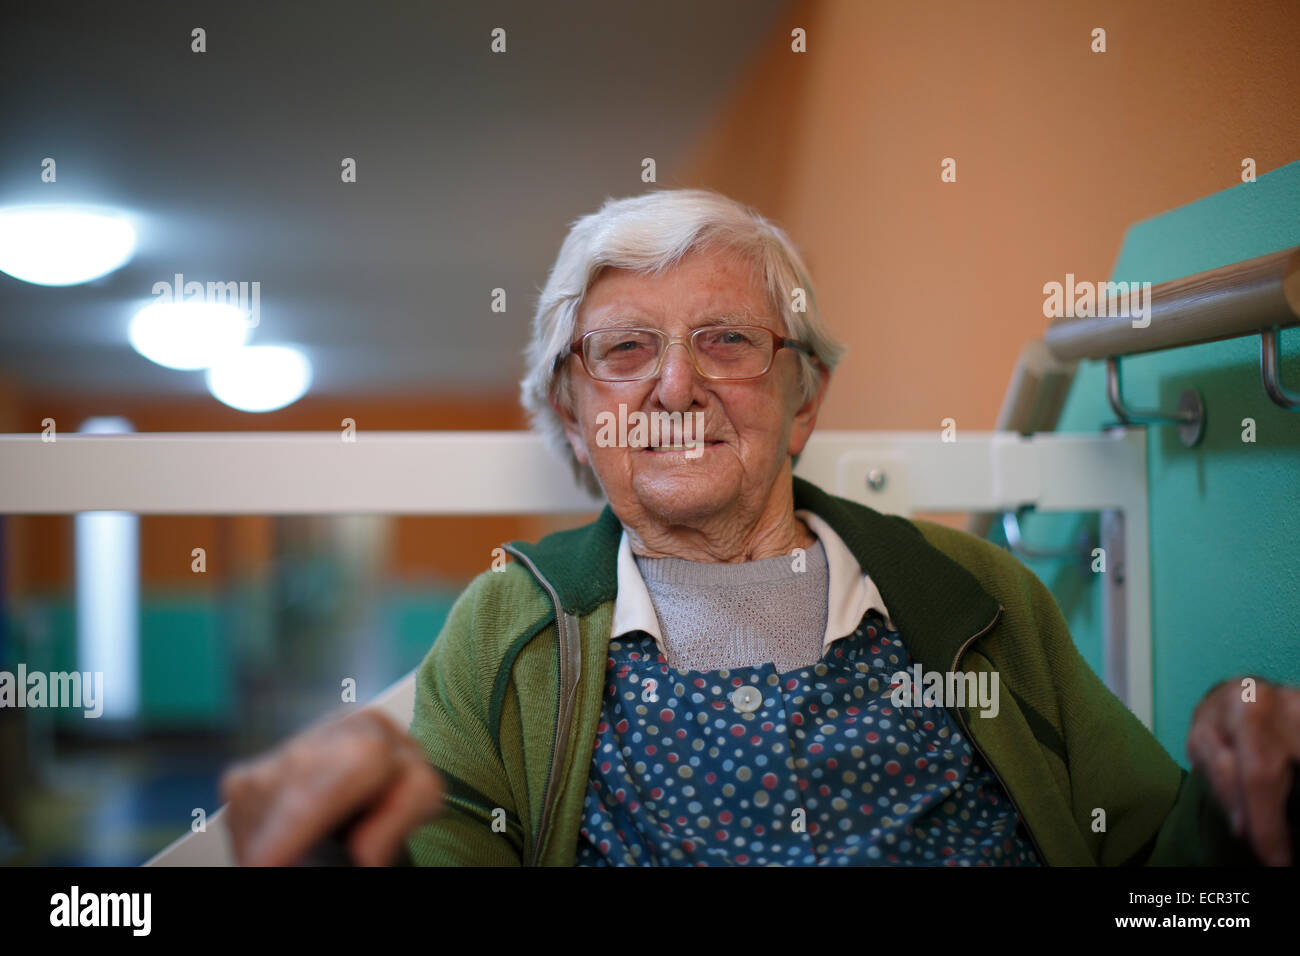 Femme de 89 ans, une maison de soins infirmiers, portrait Banque D'Images